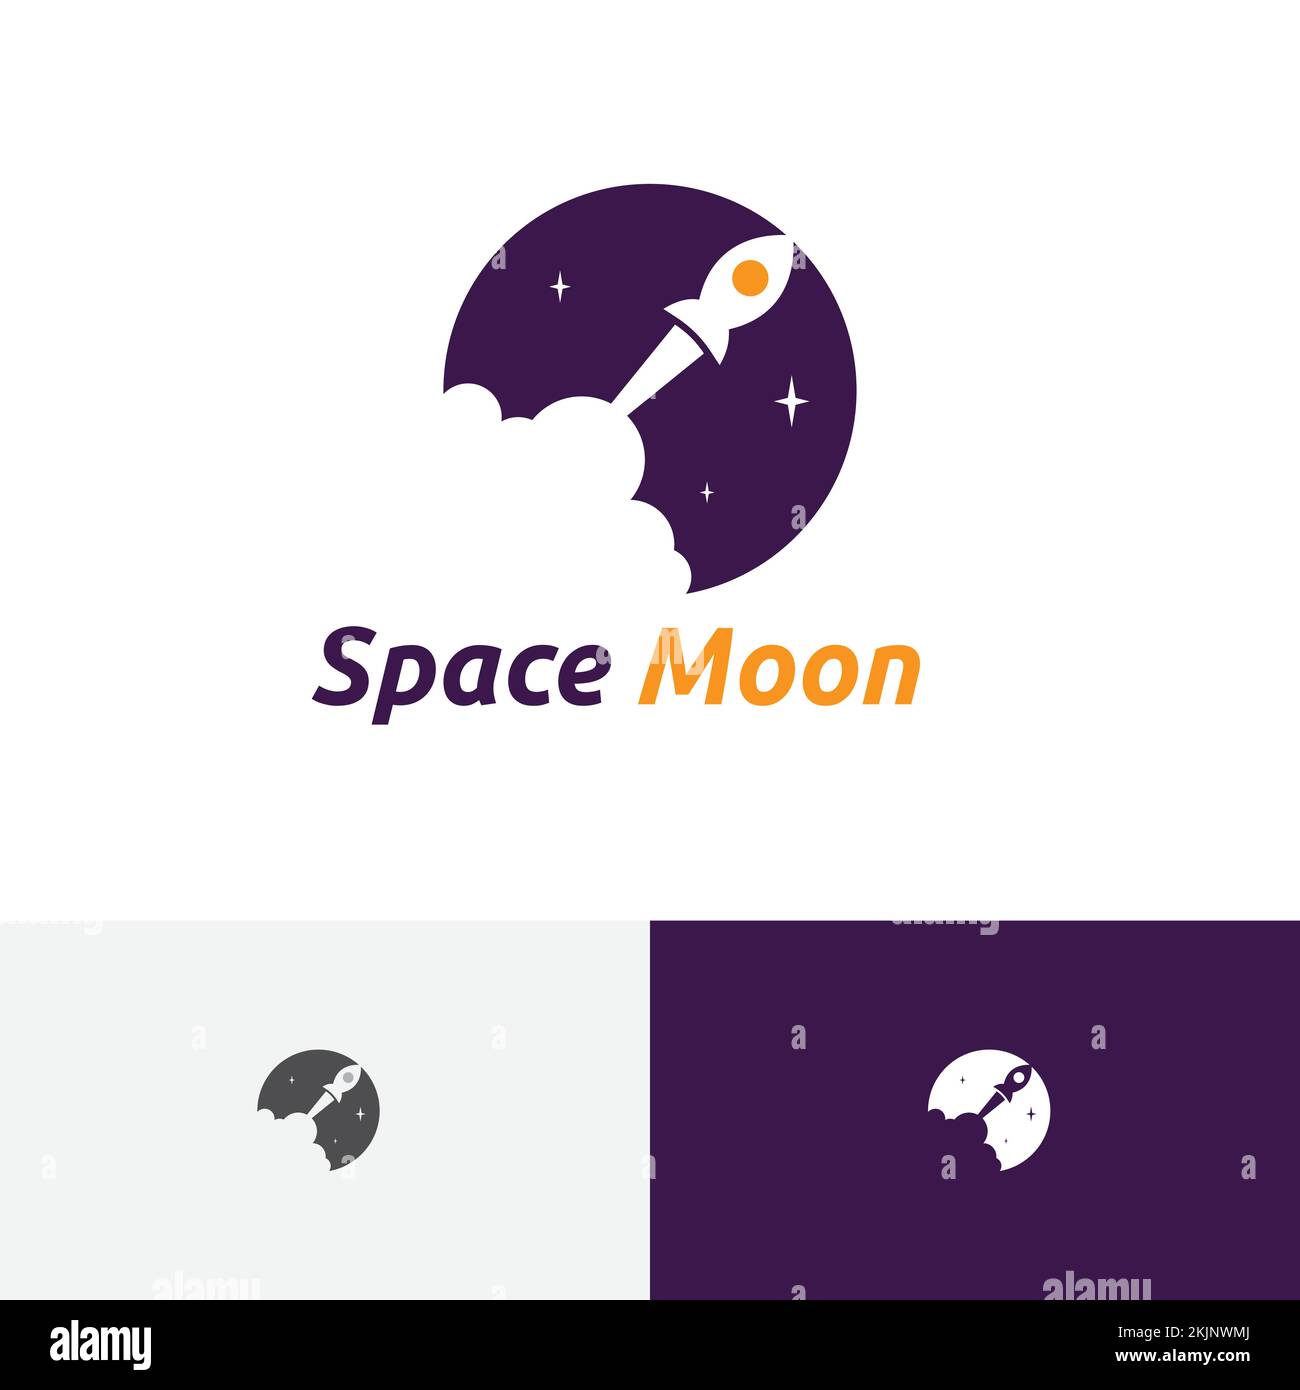 Lancement de Space Moon Rocket Explorez le logo Adventure Science Illustration de Vecteur